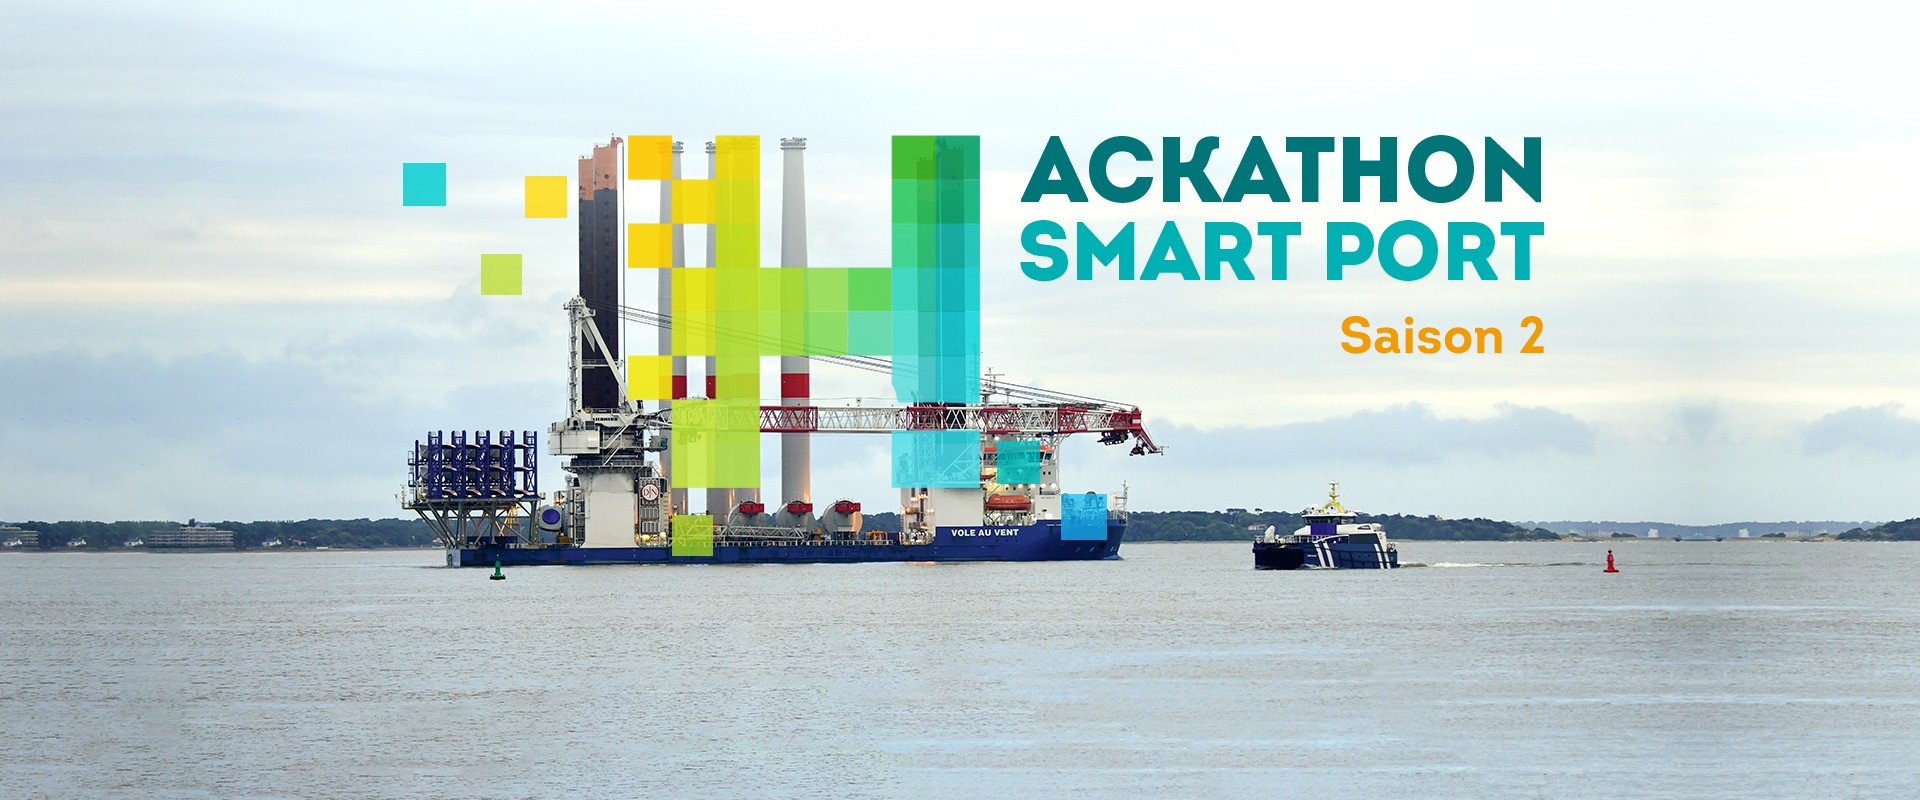 La seconde saison de l'hackathon Smart Port est lancée !